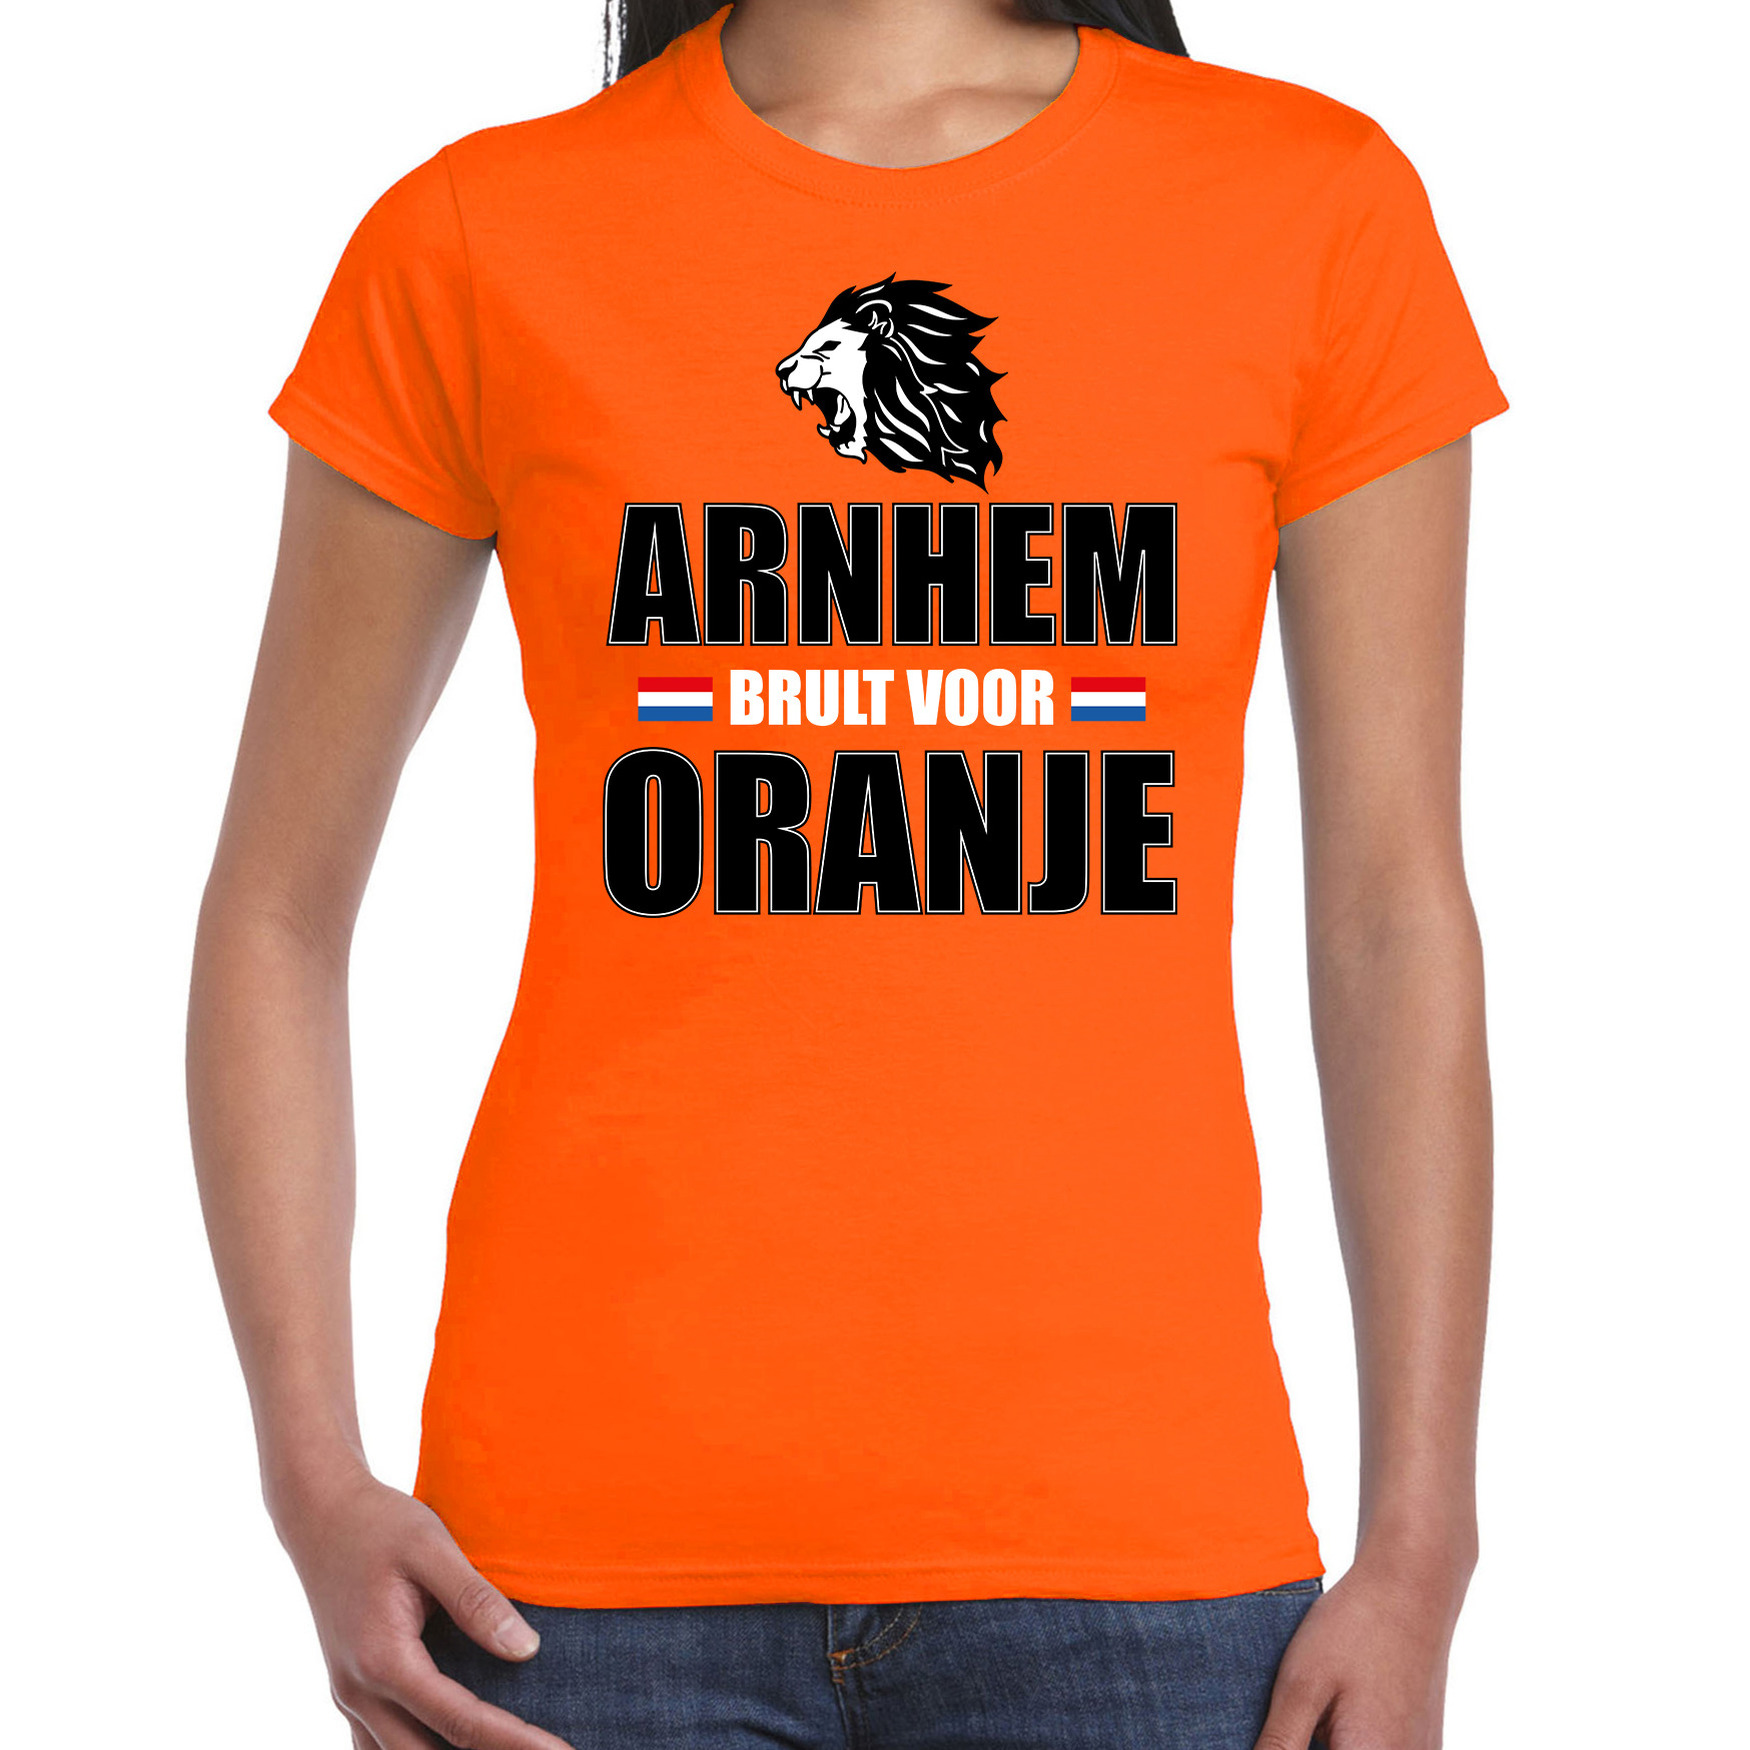 Oranje t-shirt Arnhem brult voor oranje dames - Holland - Nederland supporter shirt EK/ WK